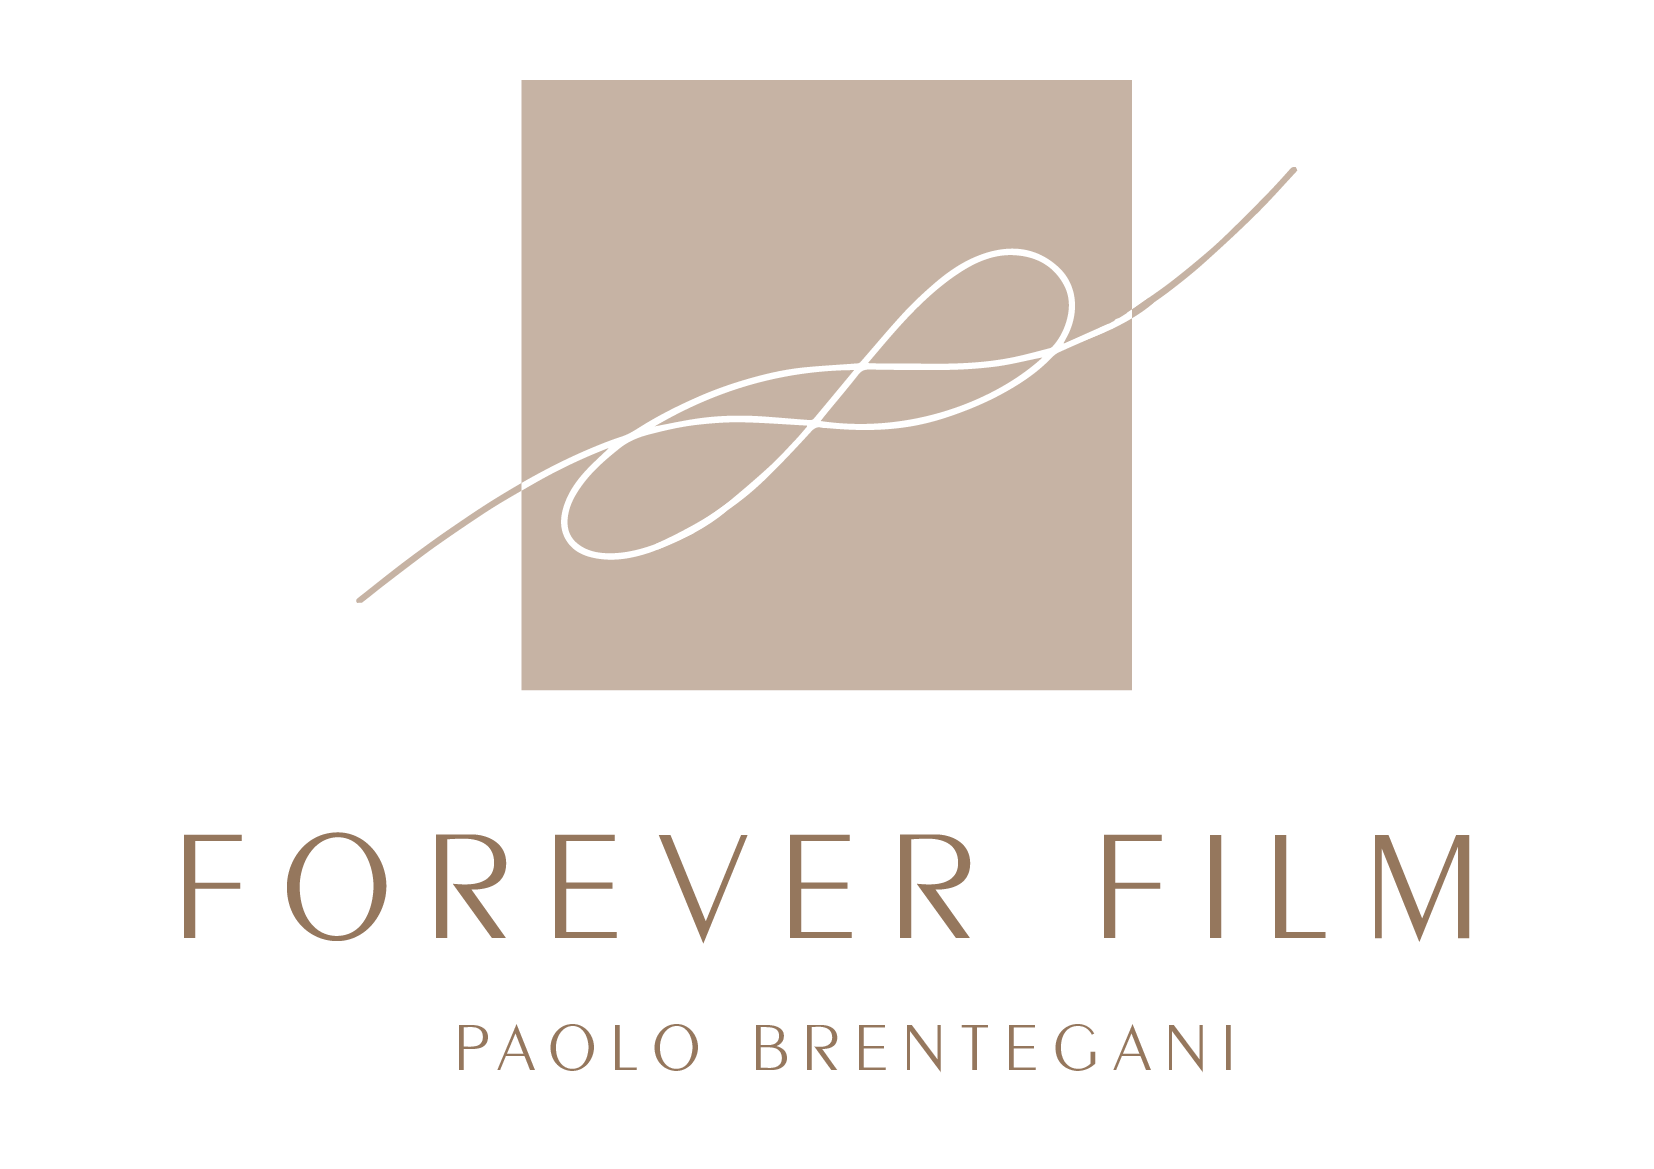 Forever Film